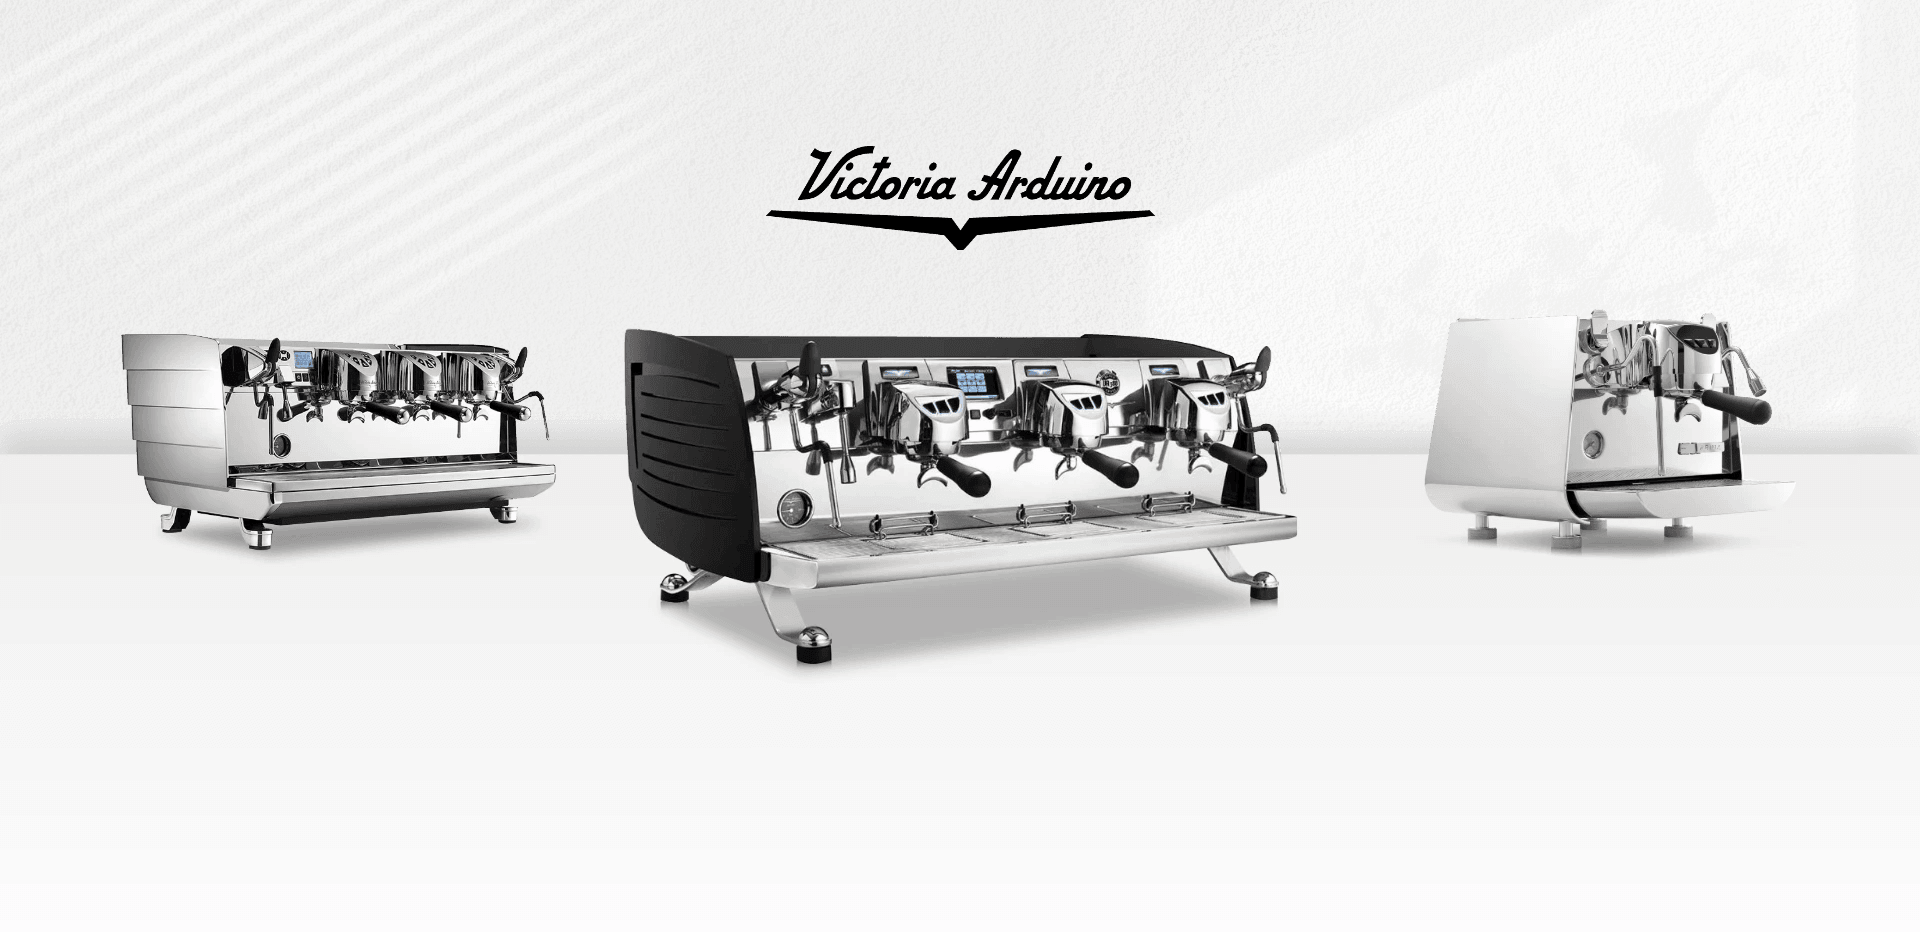 Victoria Arduino Eagle One Auto-Volumetric Espresso Machine